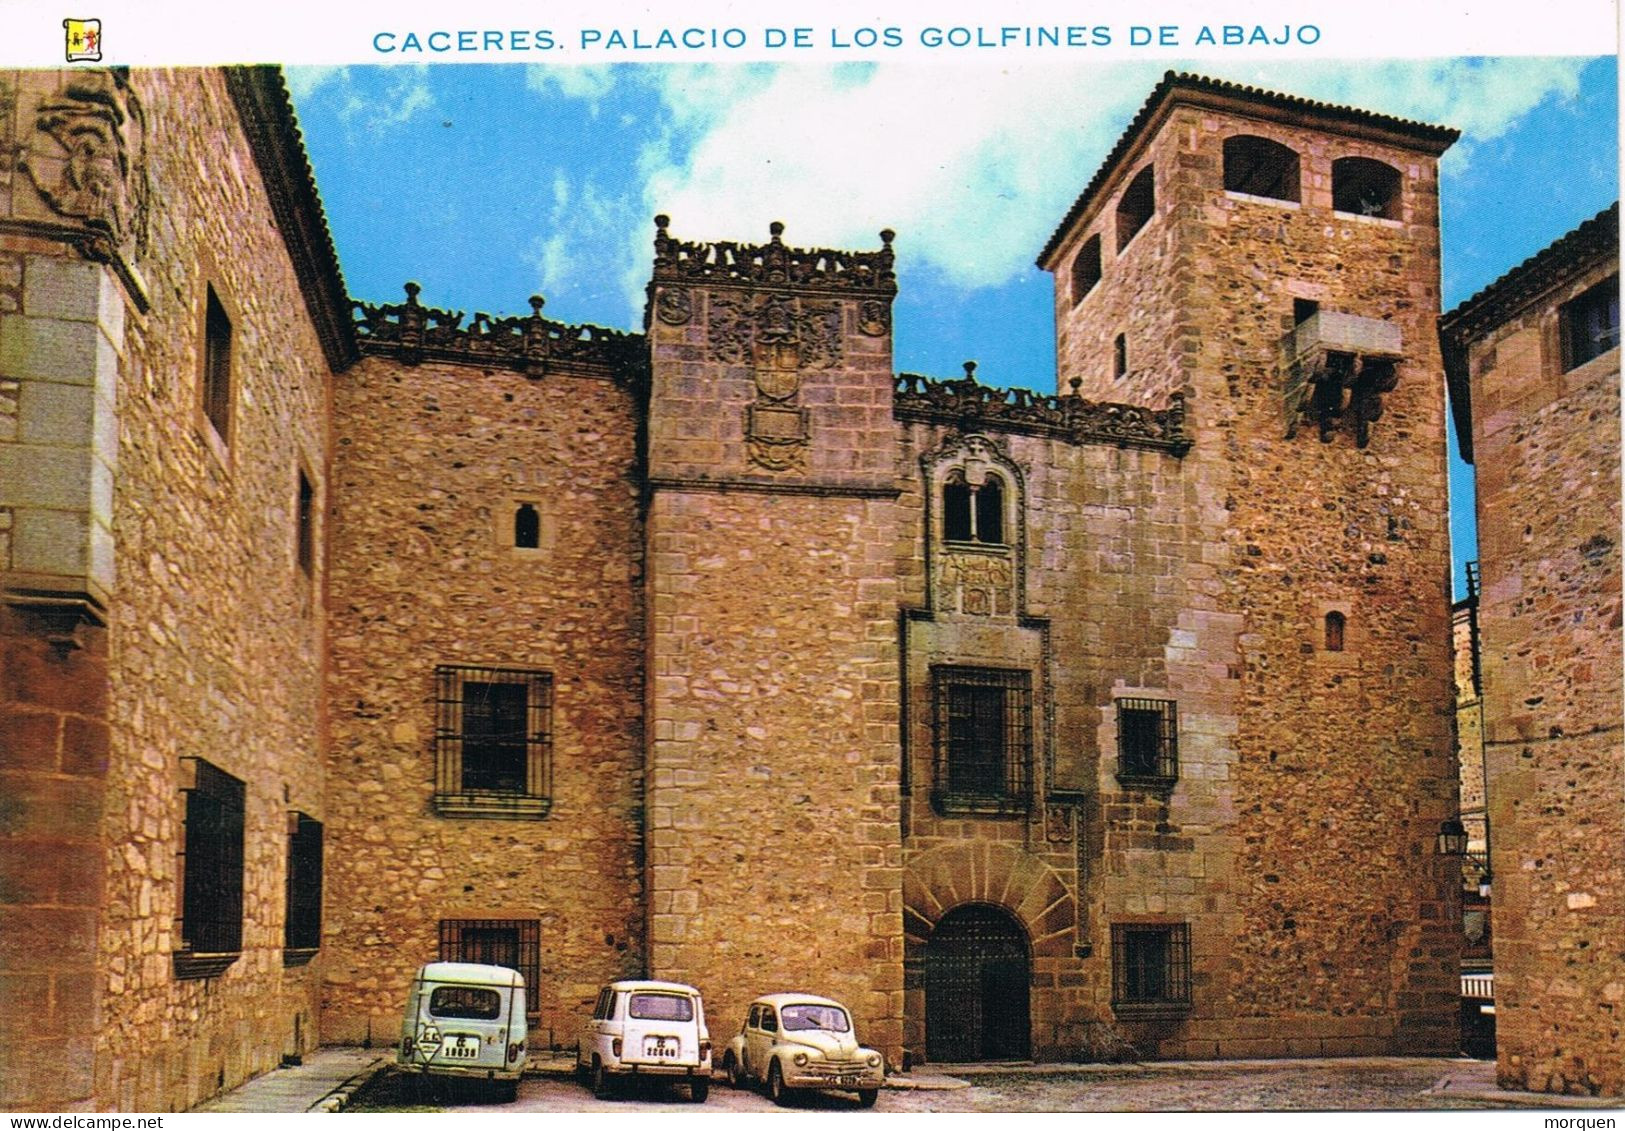 54810. Postal TOLEDO 1972. Vista Palaciuo De Golfines De Abajo En Caceres - Covers & Documents